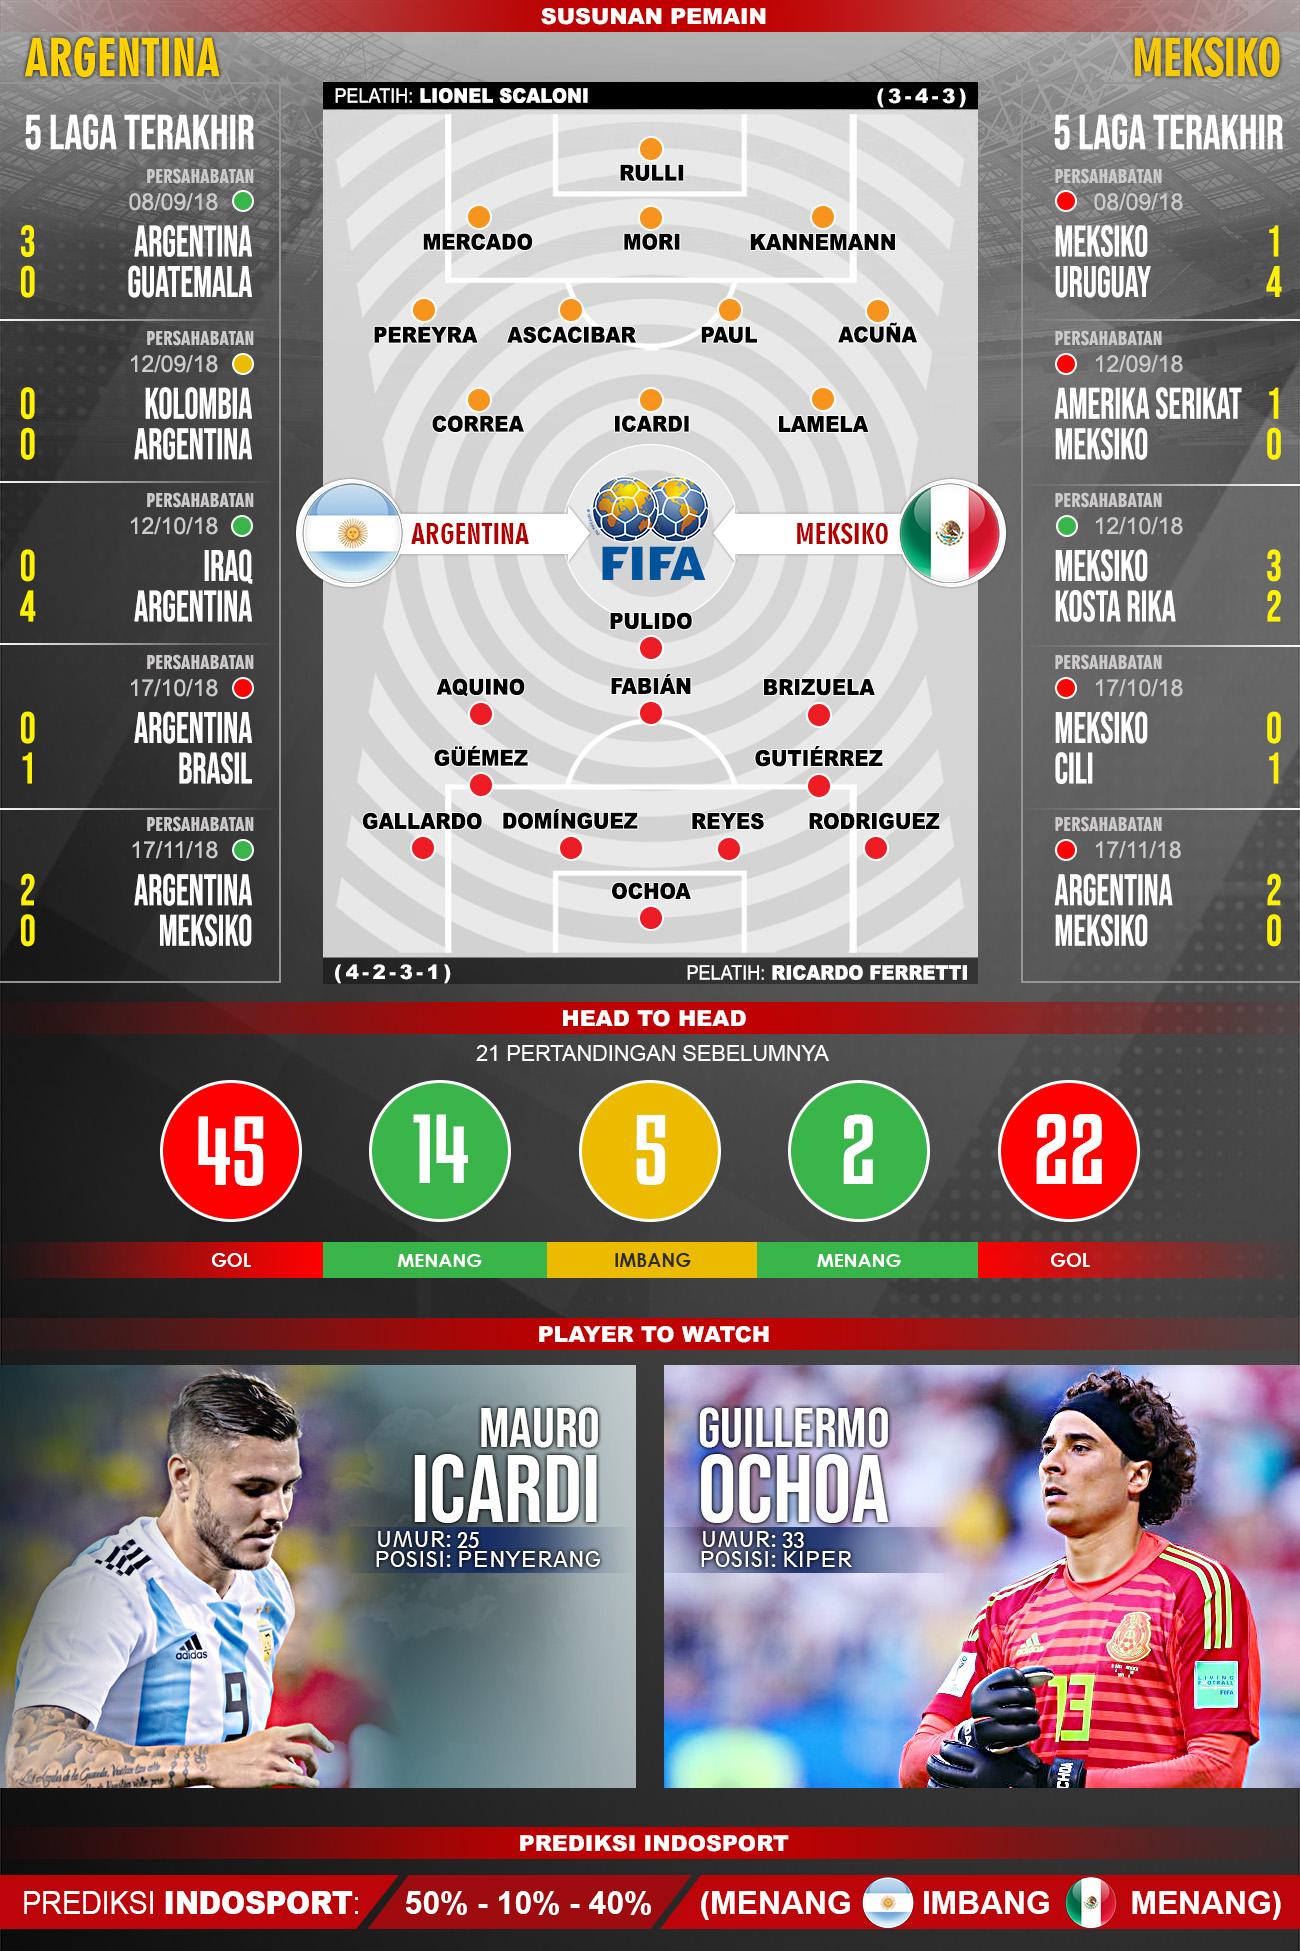 Pertandingan Argentina vs Meksiko. Copyright: Indosport.com